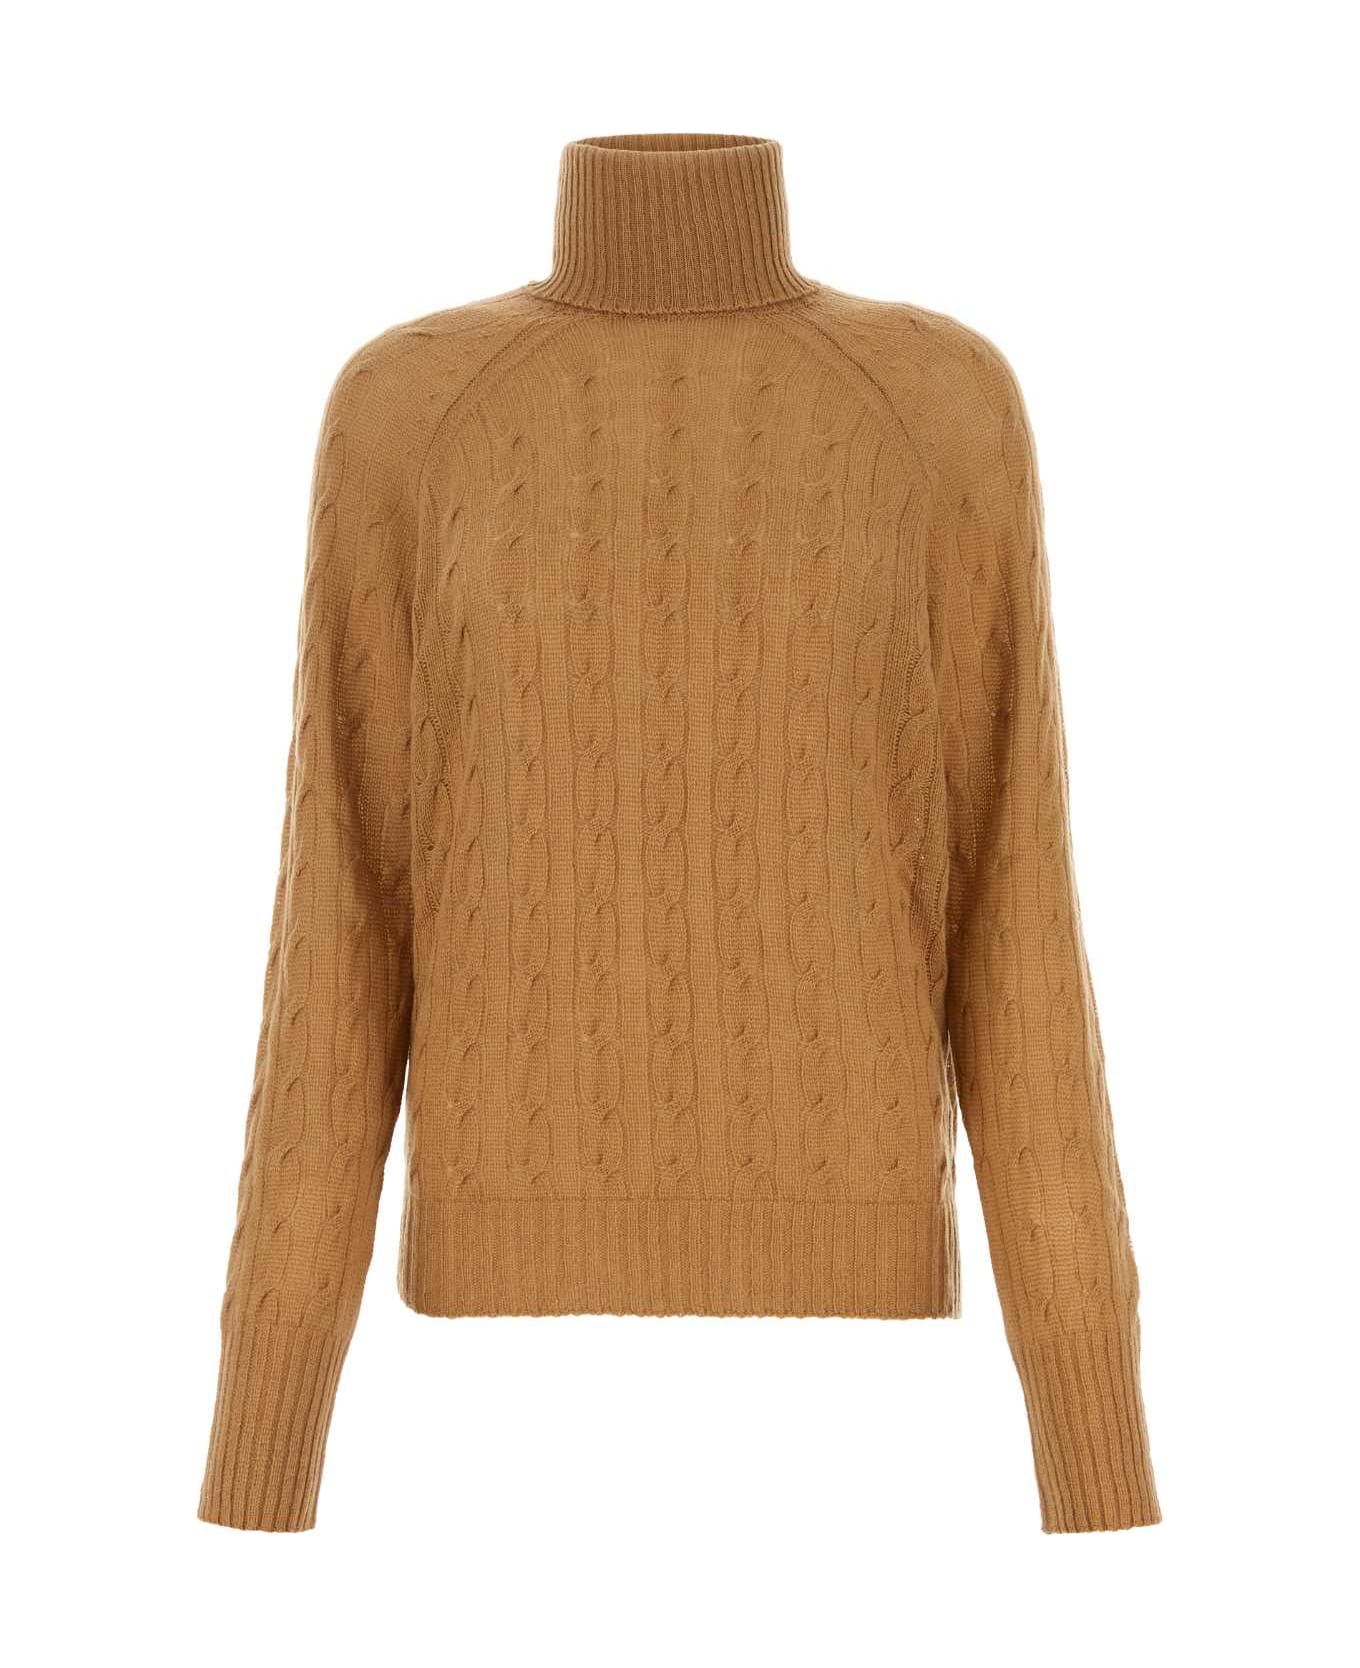 Etro Biscuit Cashmere Sweater - BEIGE